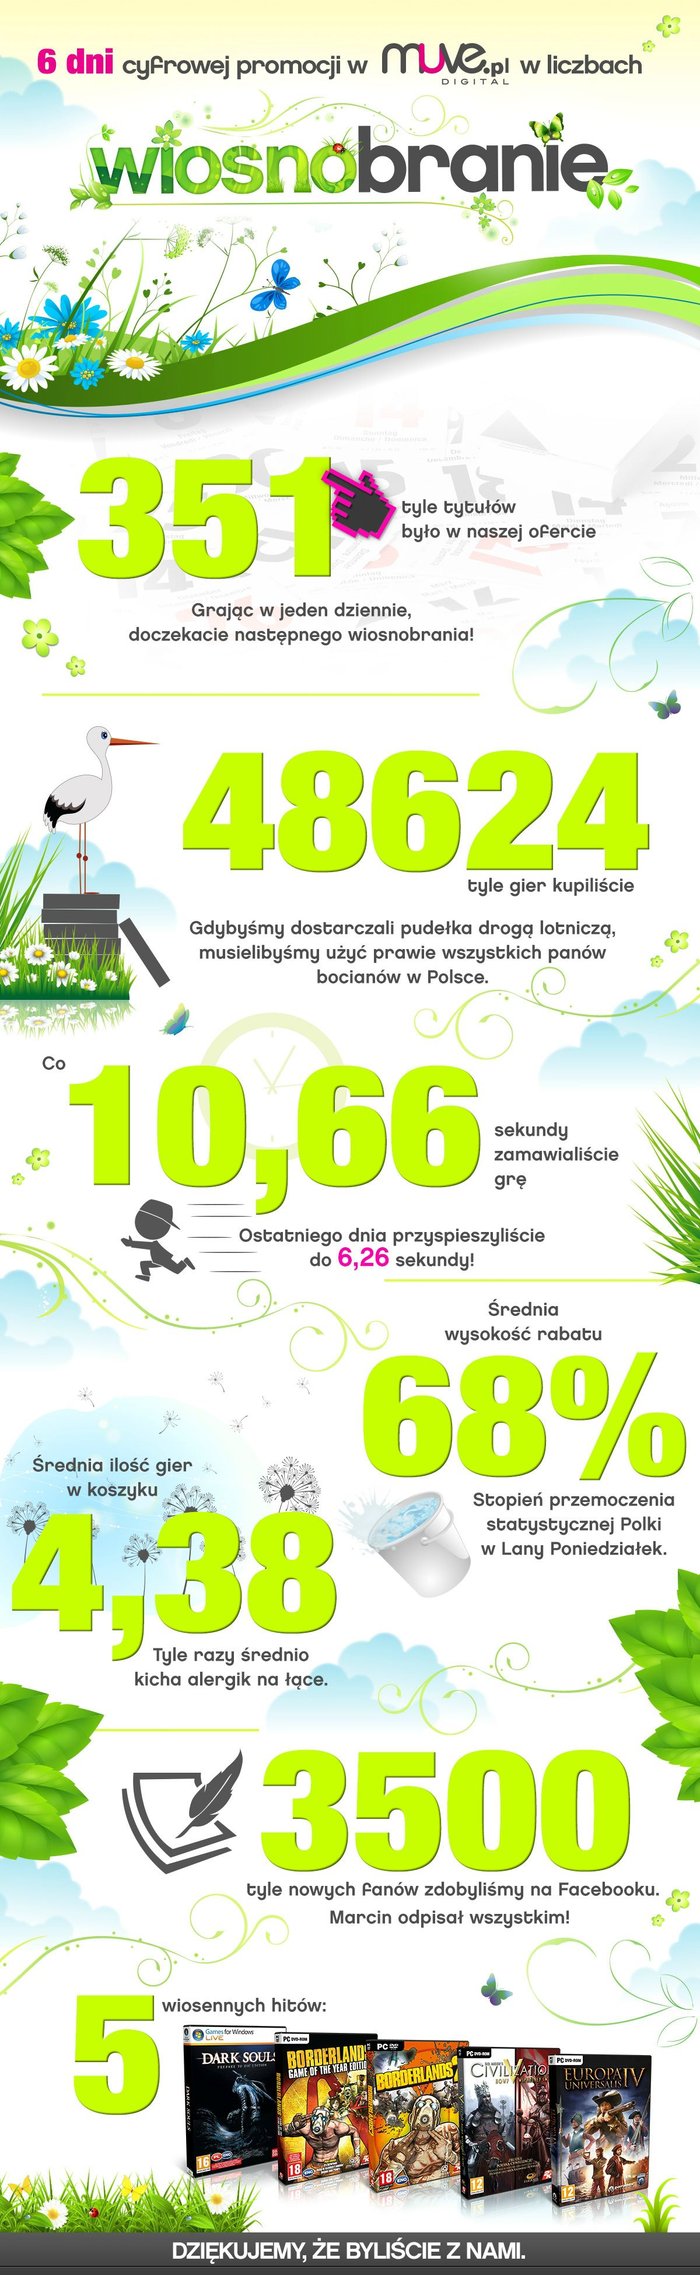 wiosnobranie-muve-infografika_176c1.jpg